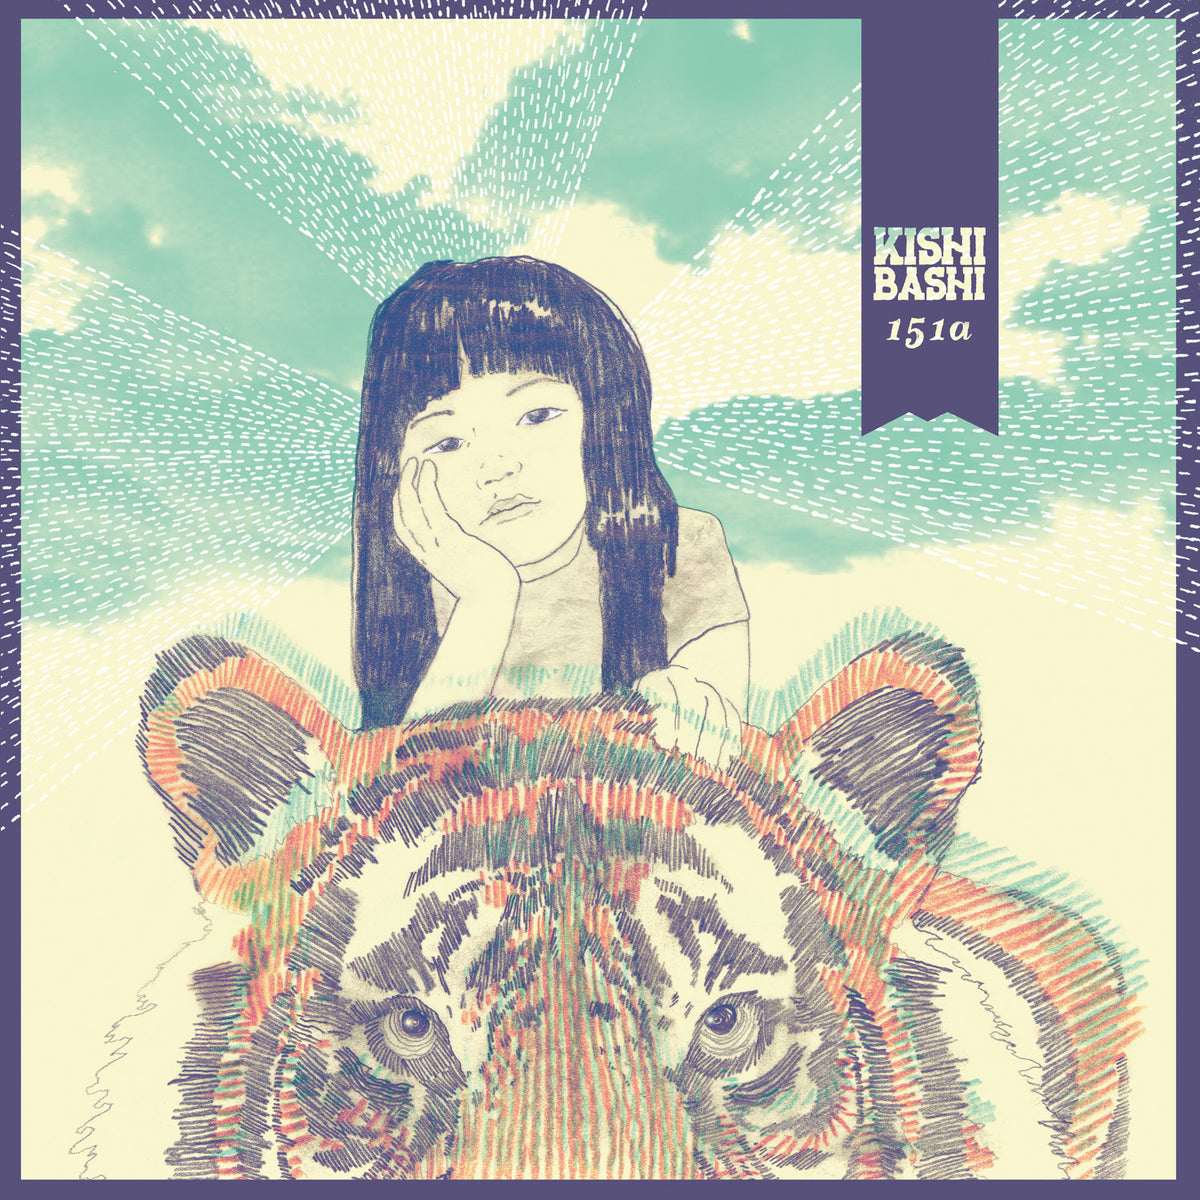 Kishi Bashi // 151a // Joyful Noise Recordings | Joyful Noise Recordings